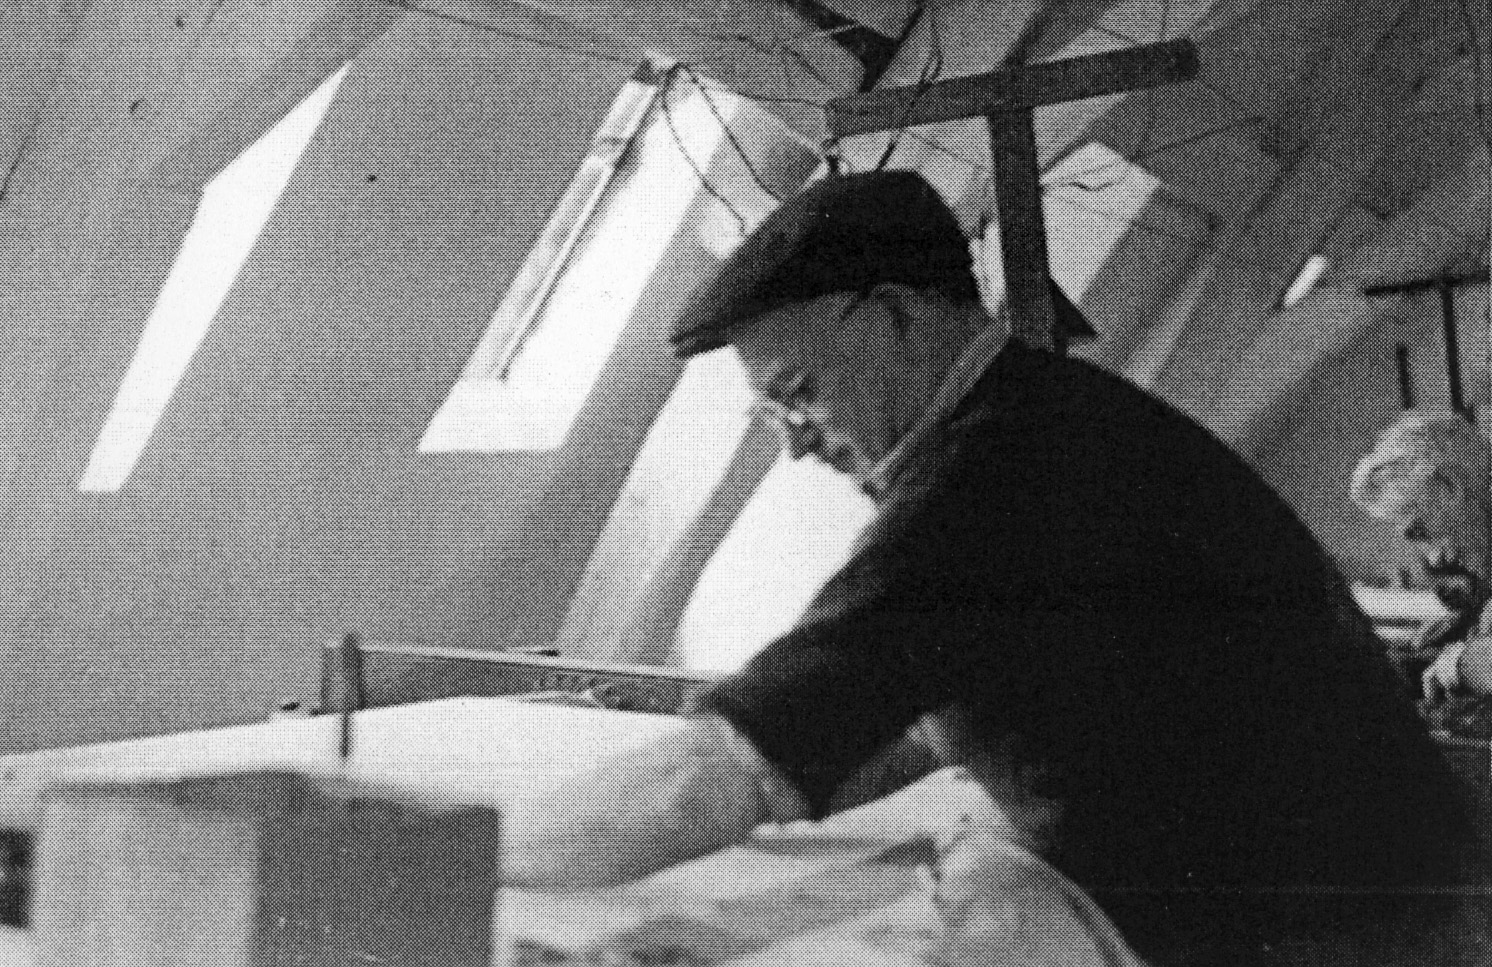 Vue d'un ouvrier au travail, tissant sur un métier à barre de l'atelier installé dans les combles (v. 1970).